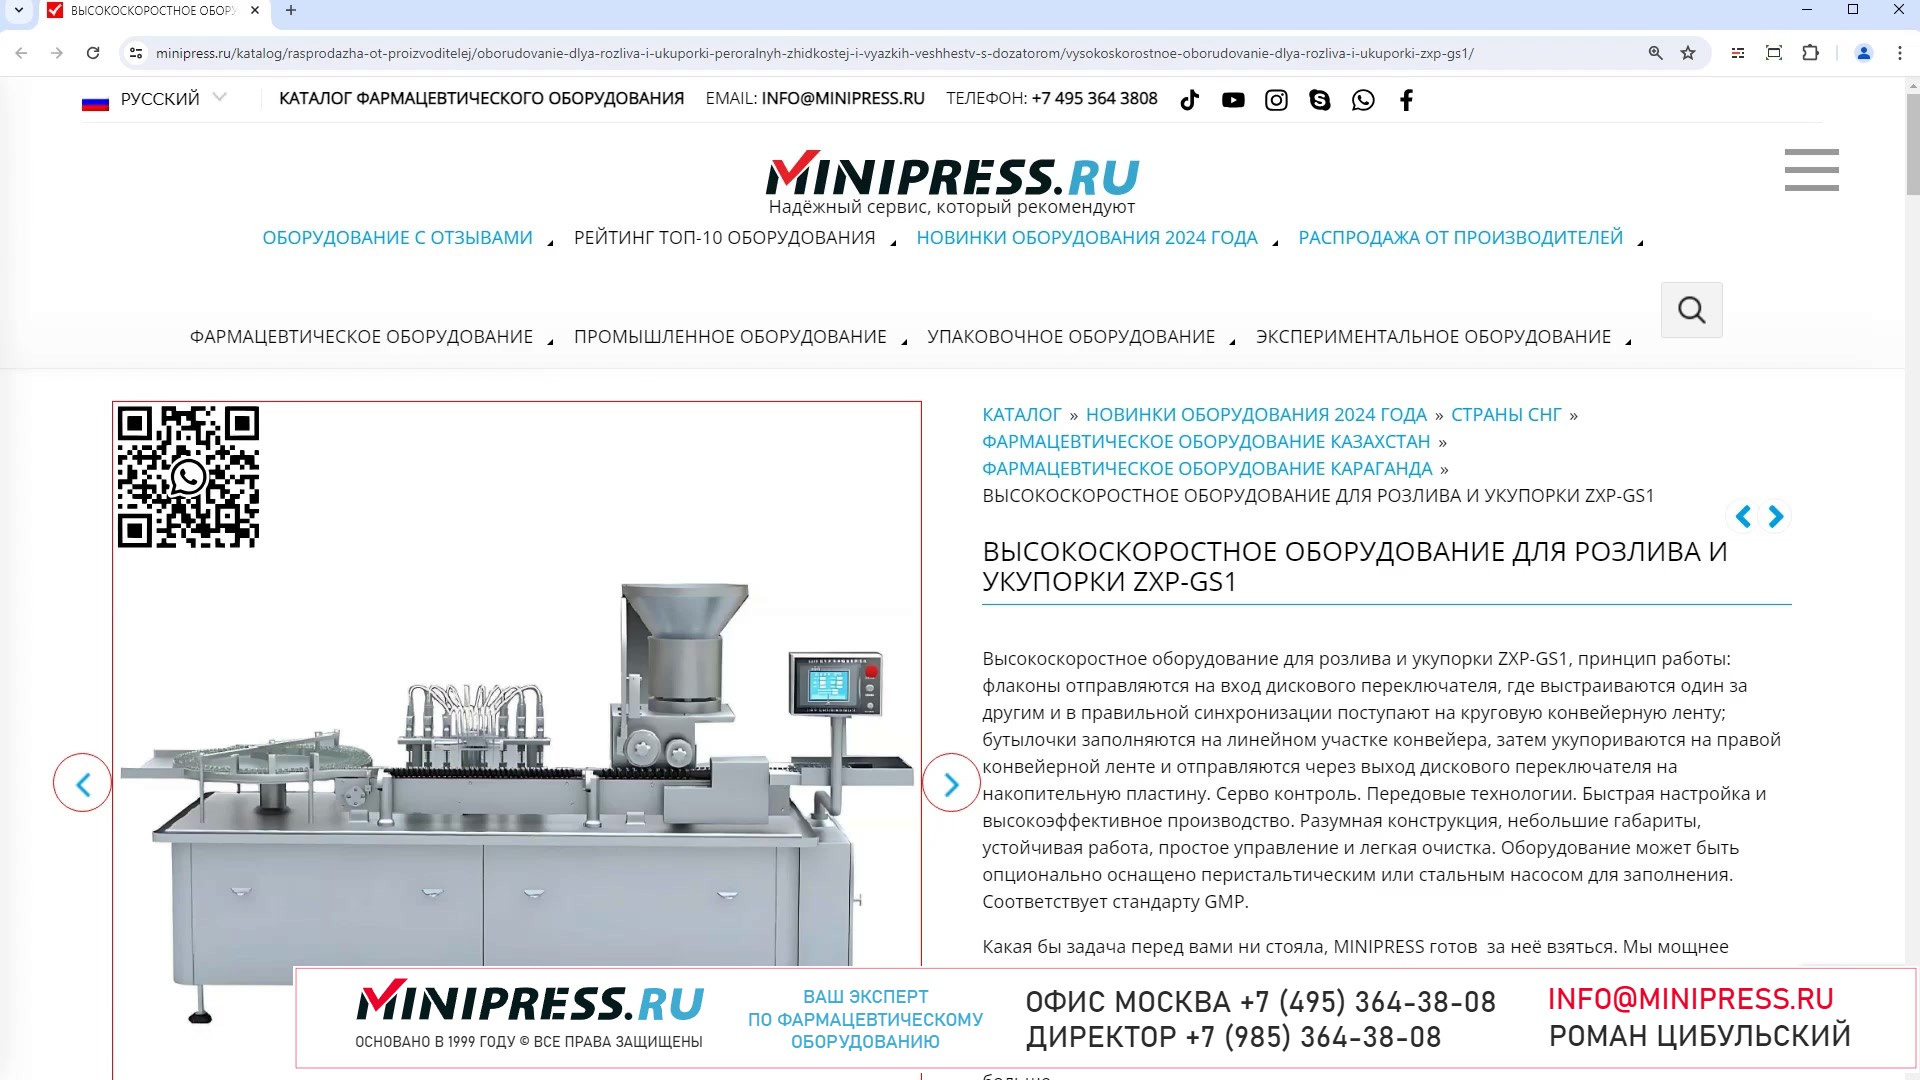 Minipress.ru Высокоскоростное оборудование для розлива и укупорки ZXP-GS1